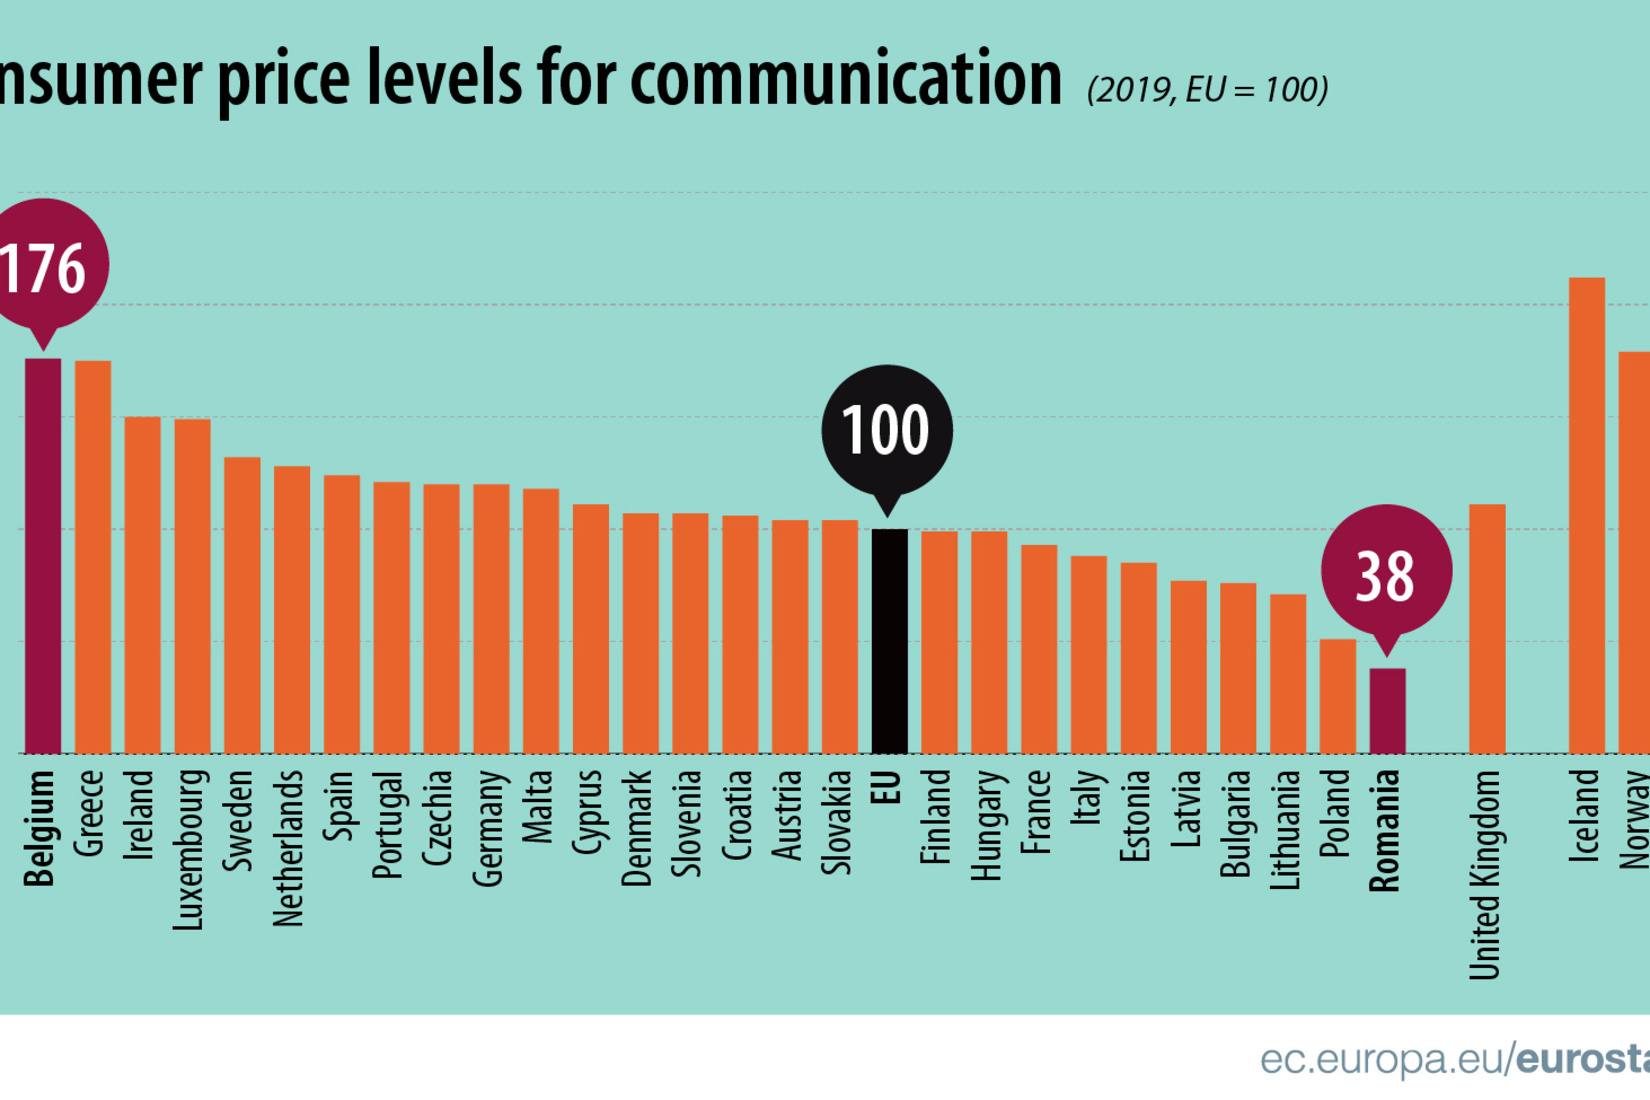 België is koploper in de EU voor de prijzen van communicatie., Eurostat